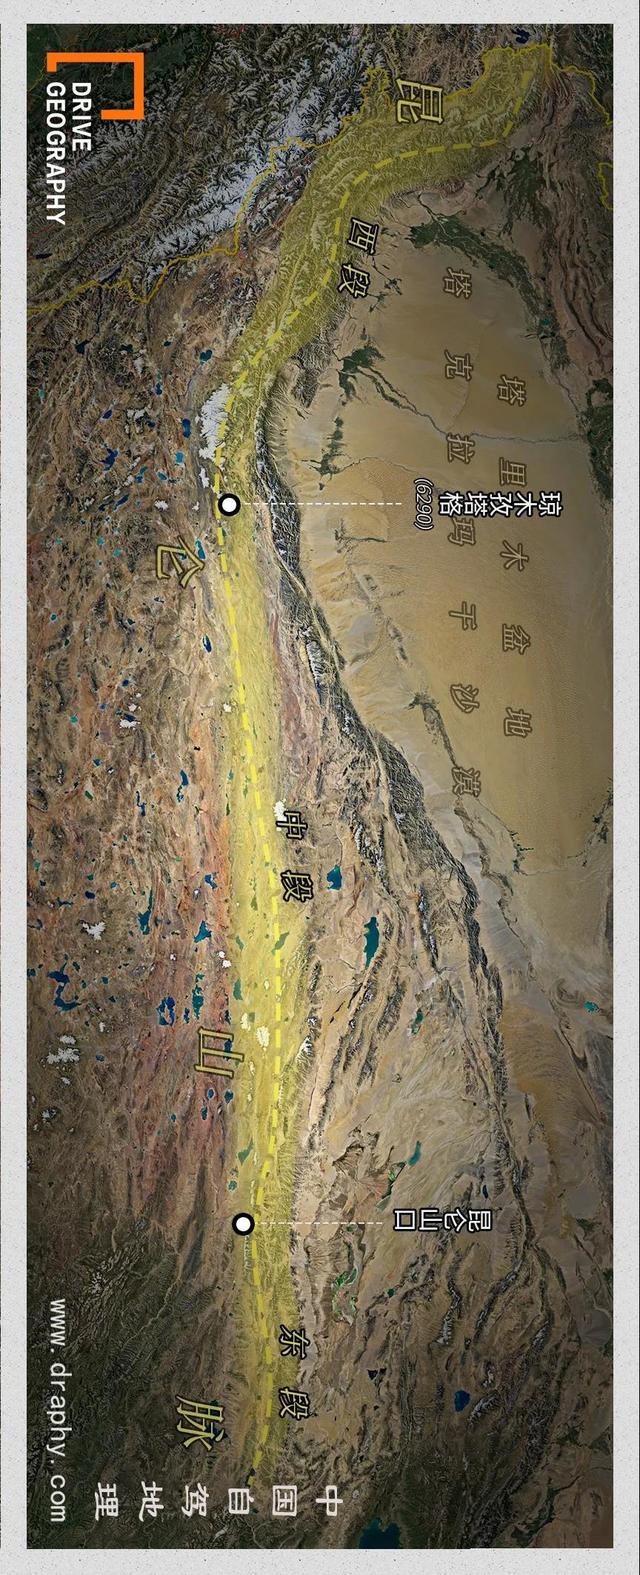 克里雅古道，一条以艰险著称的新疆进藏通道，到底是什么样的？